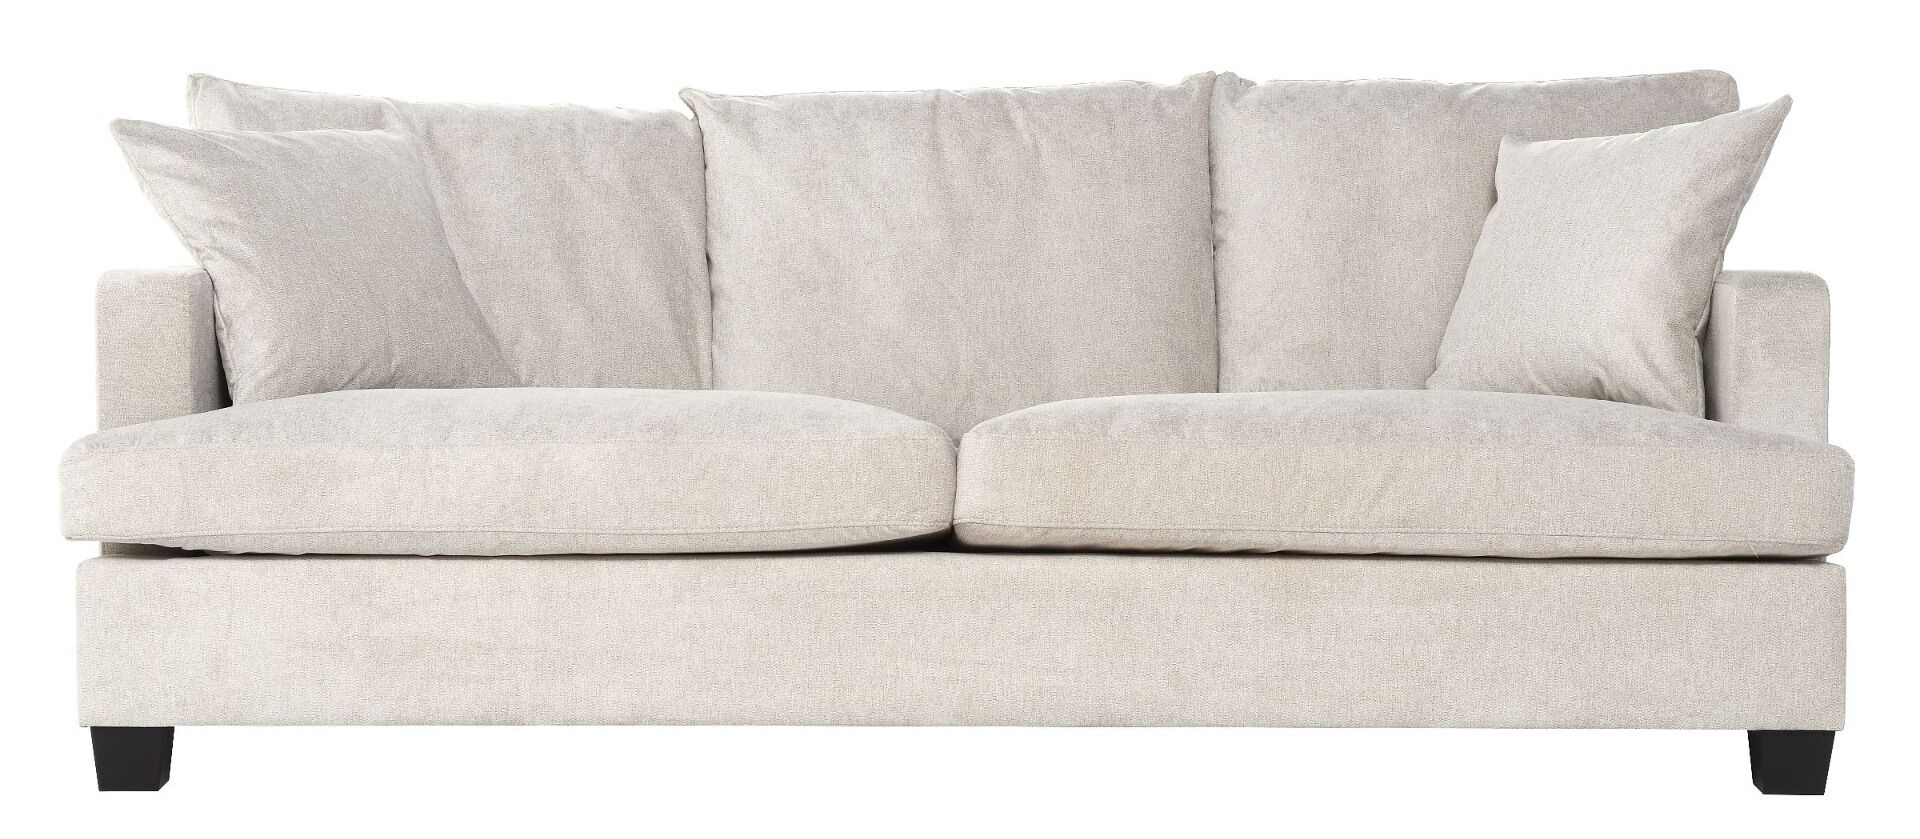 Sofa View 3 osobowa 215x102x88 cm